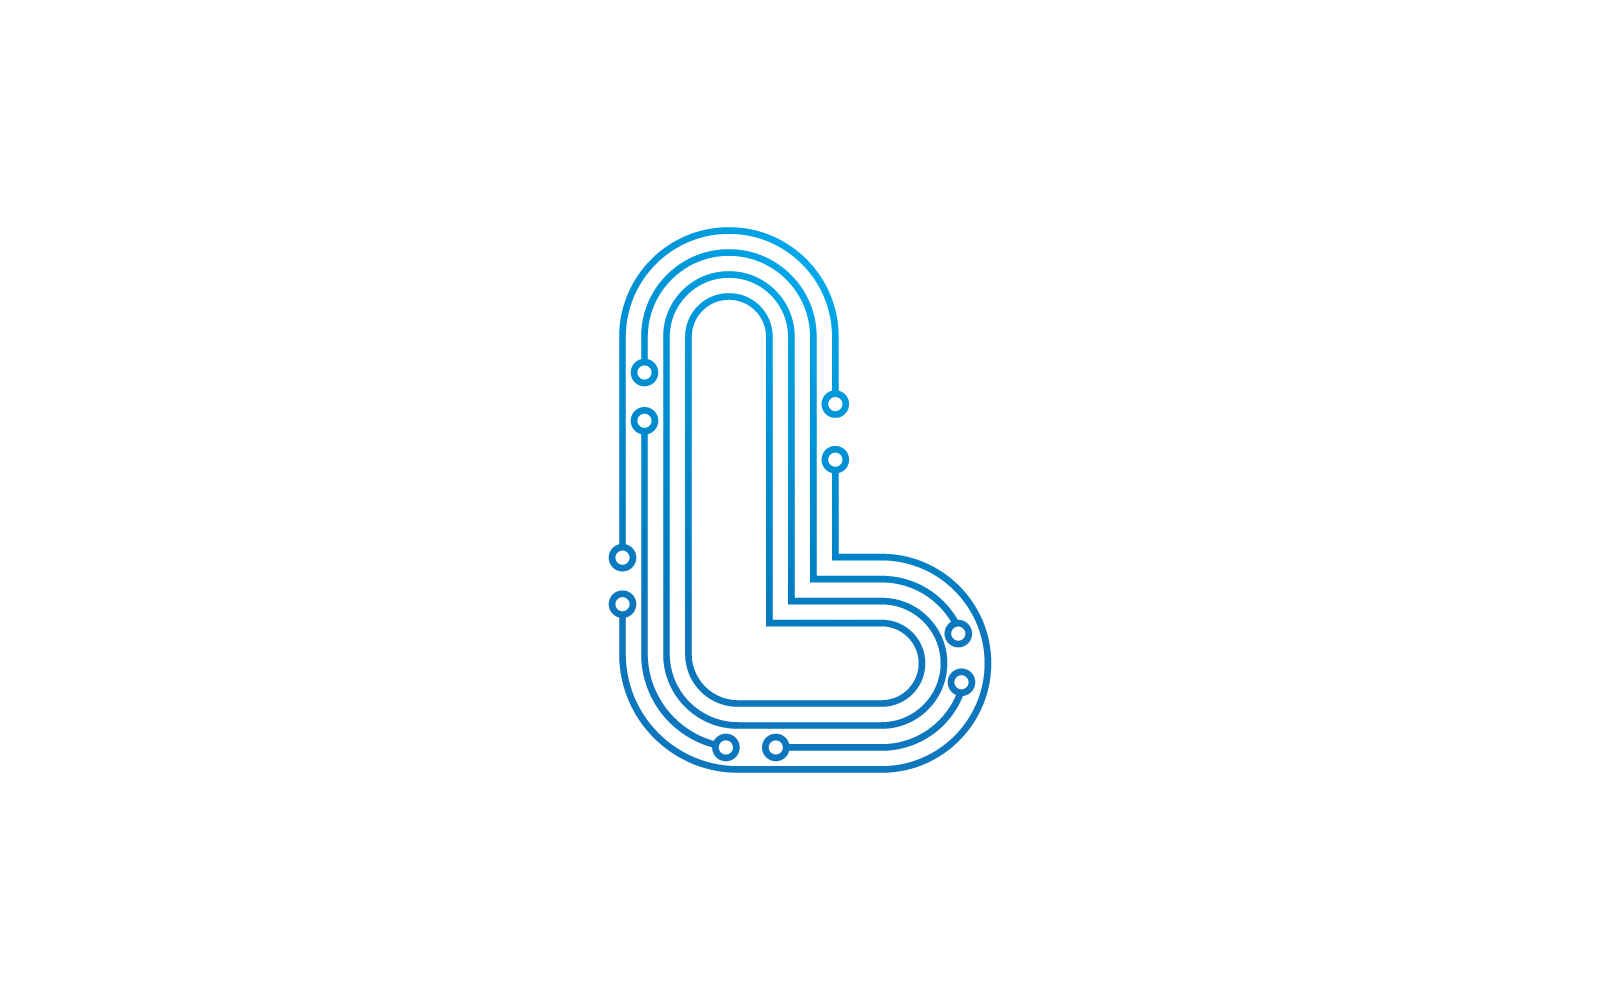 L-Anfangsbuchstabe. Logo-Vektorvorlage für die Illustration von Schaltungstechnologie